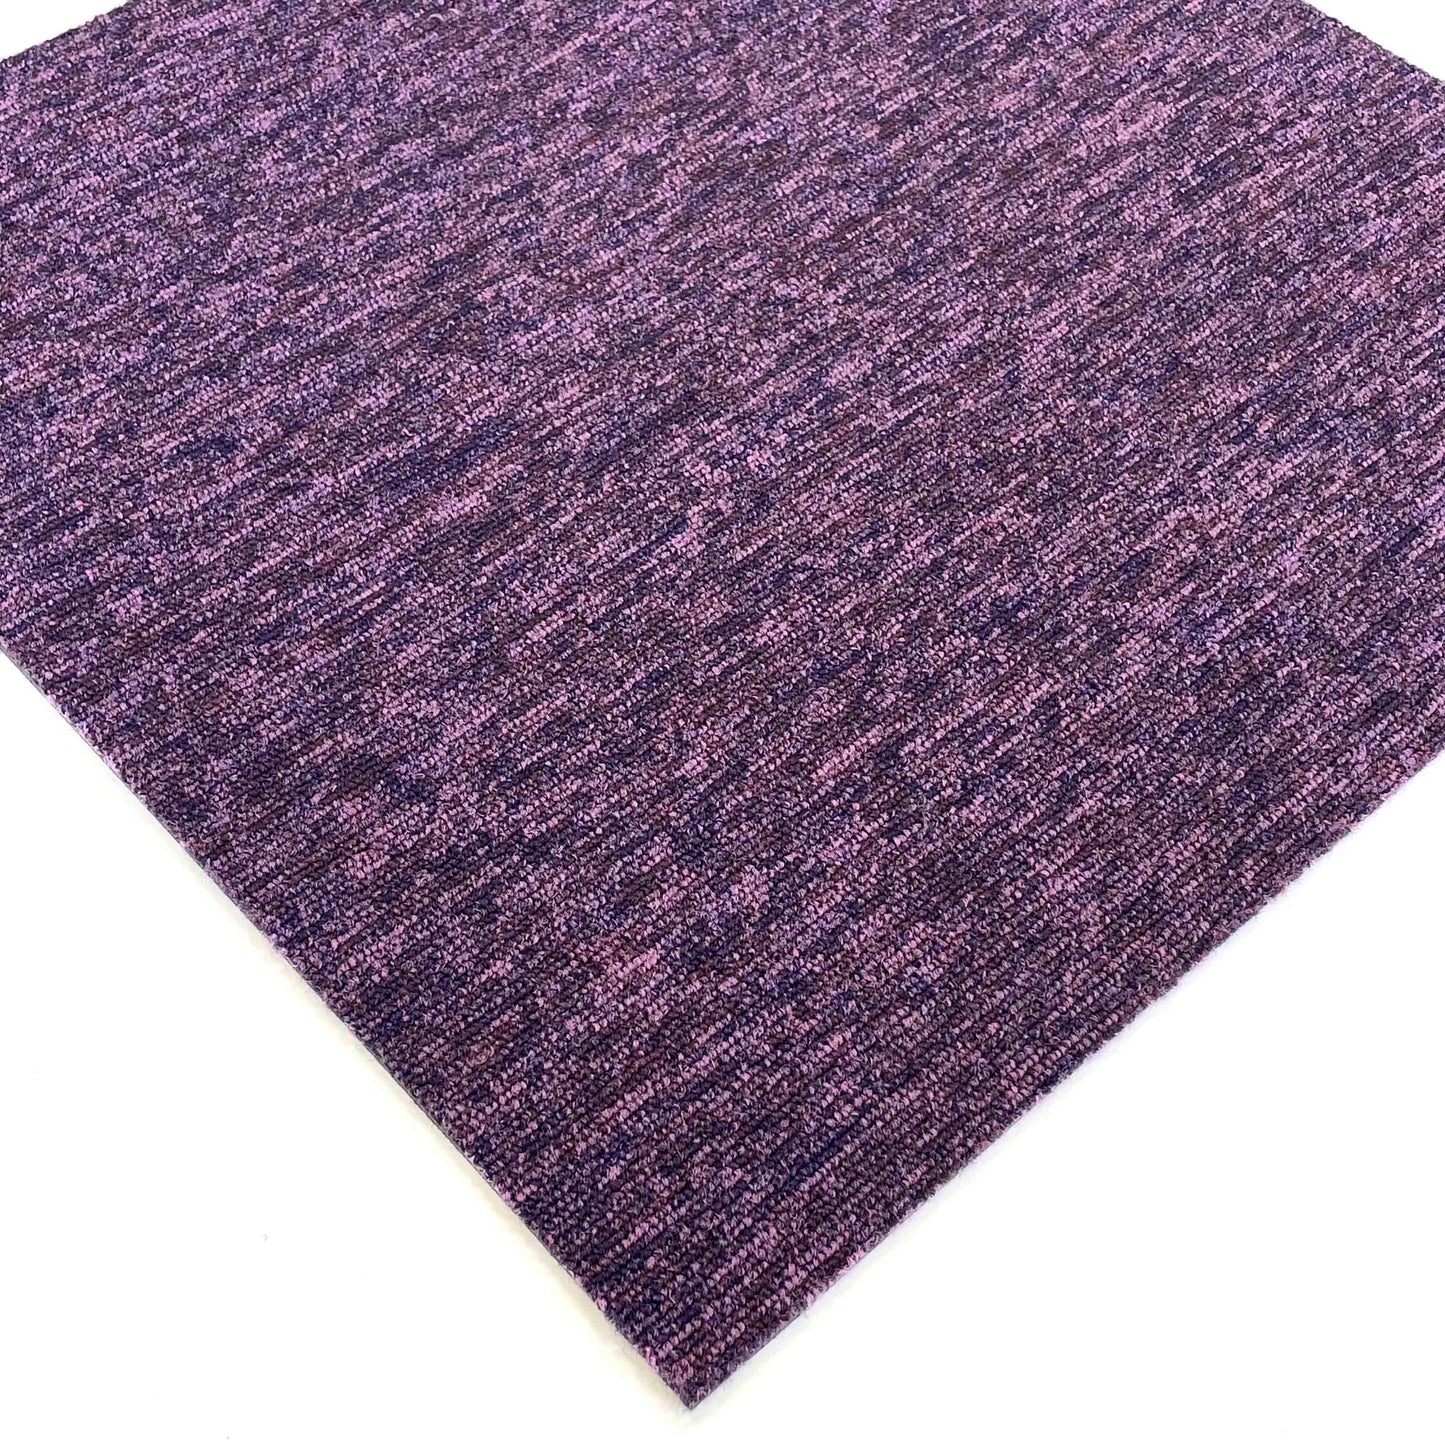 Deep Purple Speckled Carpet Tiles